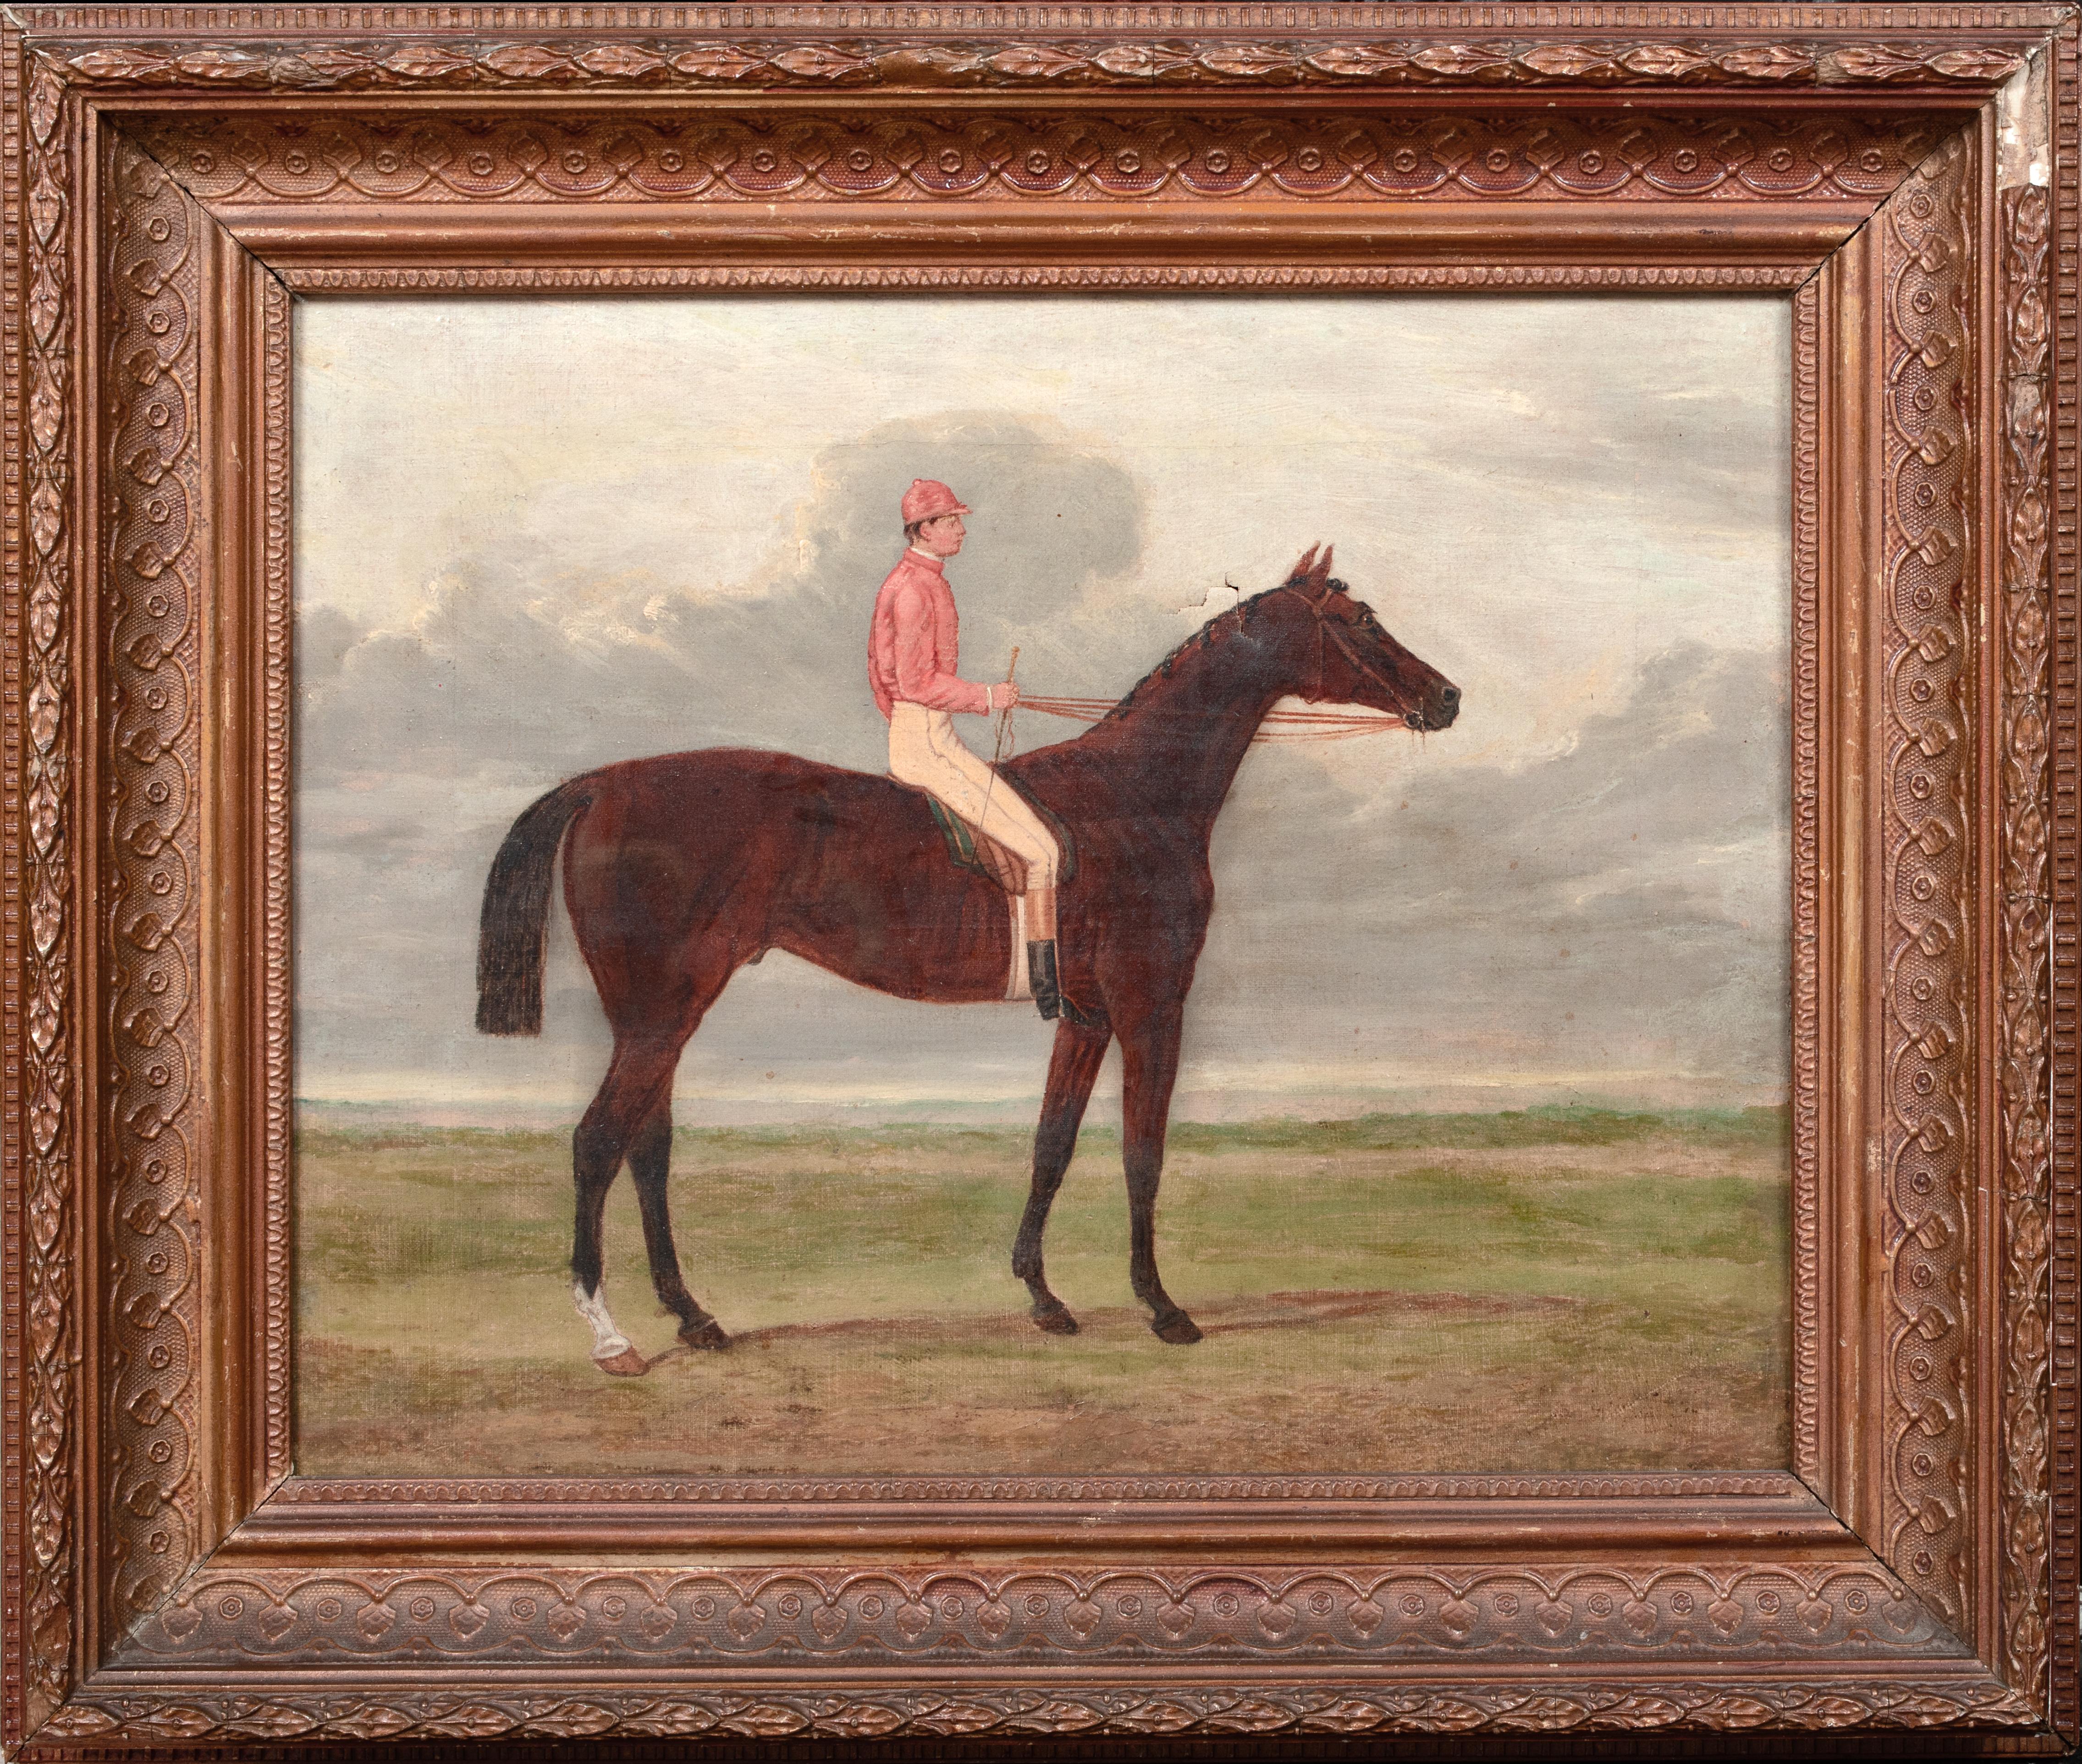 John Frederick Herring Sr. Portrait Painting - Portrait Of "Sefton" Henry Constable Up Top 1878 Epsom Derby Winner 19th Century